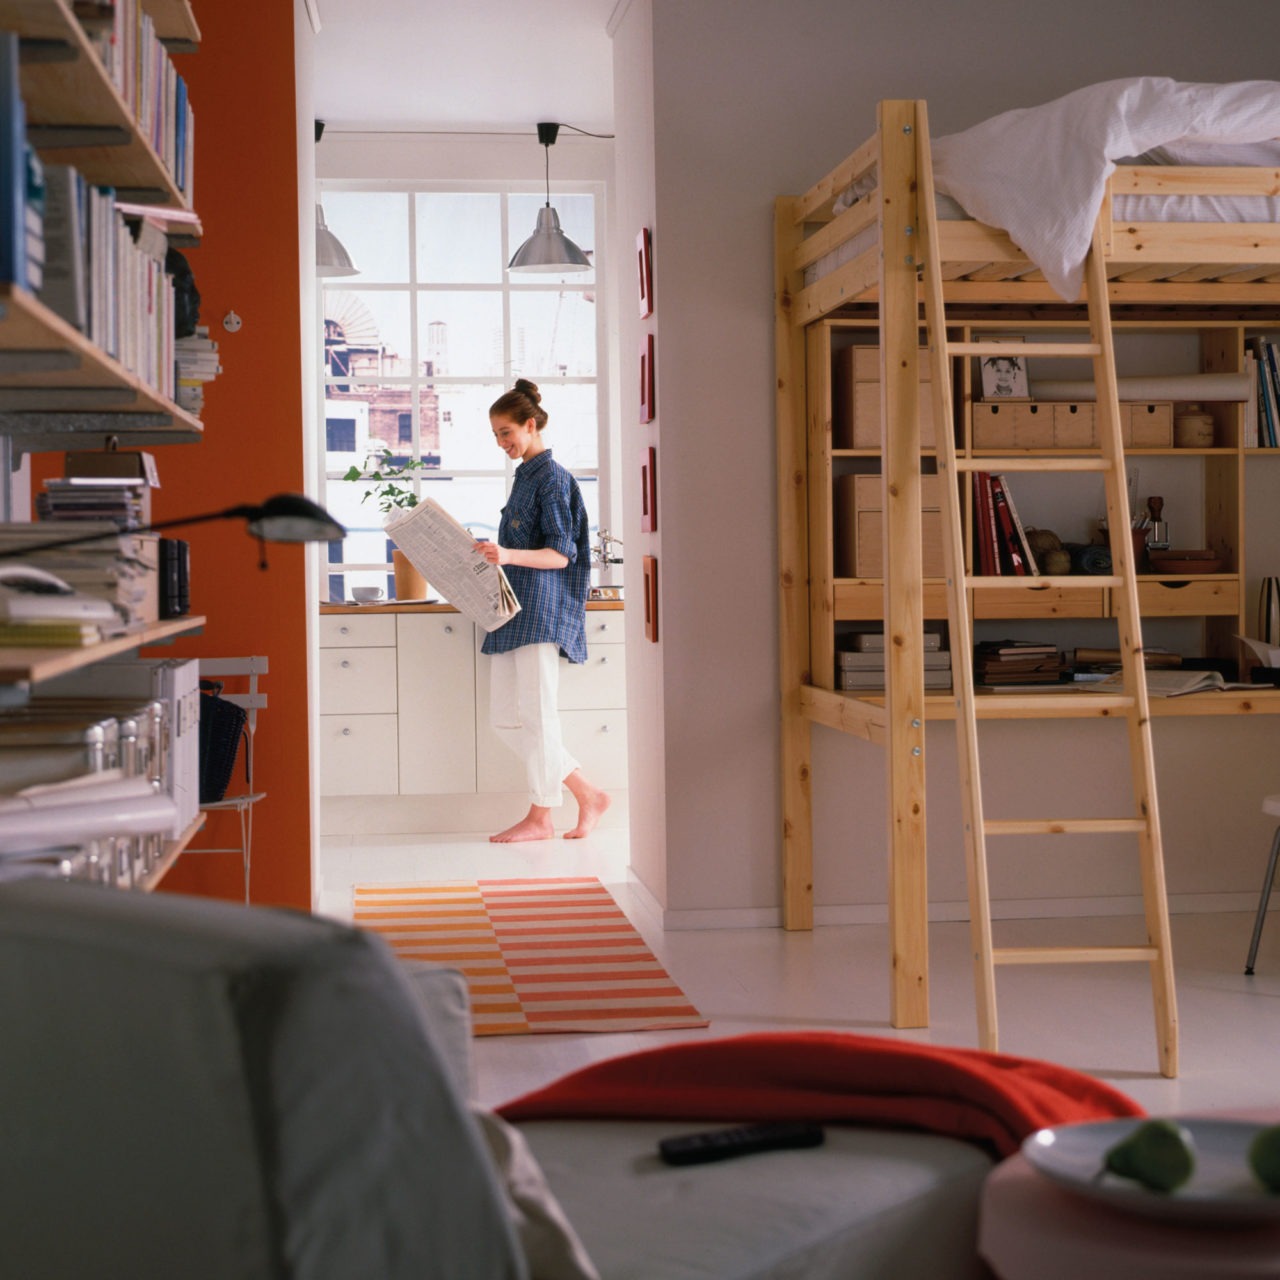 Habitación con cama elevada y espacio de trabajo, estanterías sujetas a la pared, diván y paso hacia la cocina.